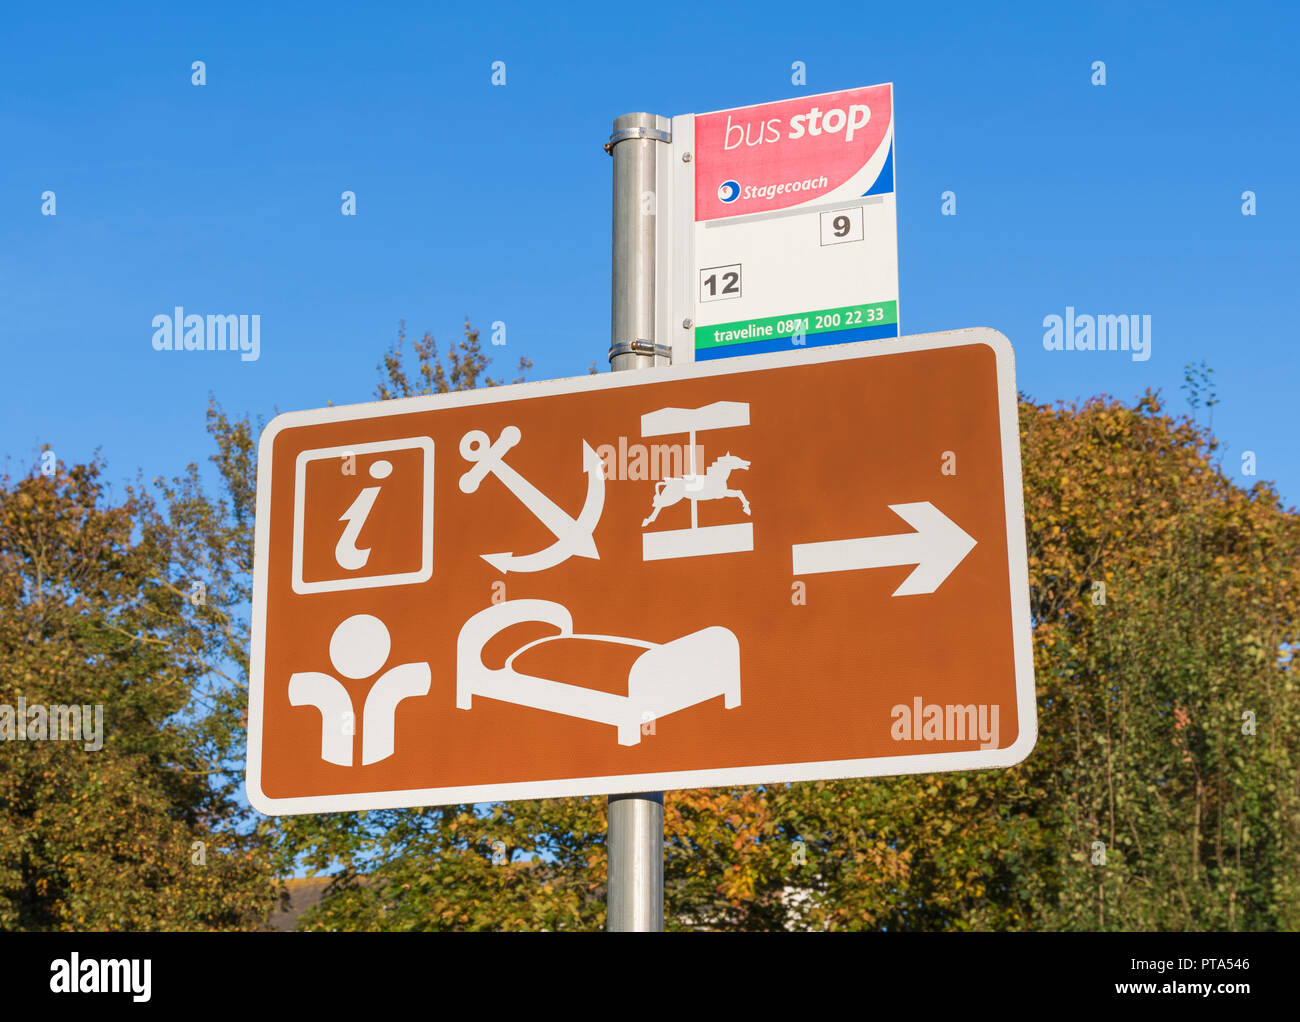 Marrone informazioni turistiche sign in una cittadina britannica con le indicazioni per le destinazioni locali per turisti, in Inghilterra, Regno Unito. Città Info sign UK. Foto Stock